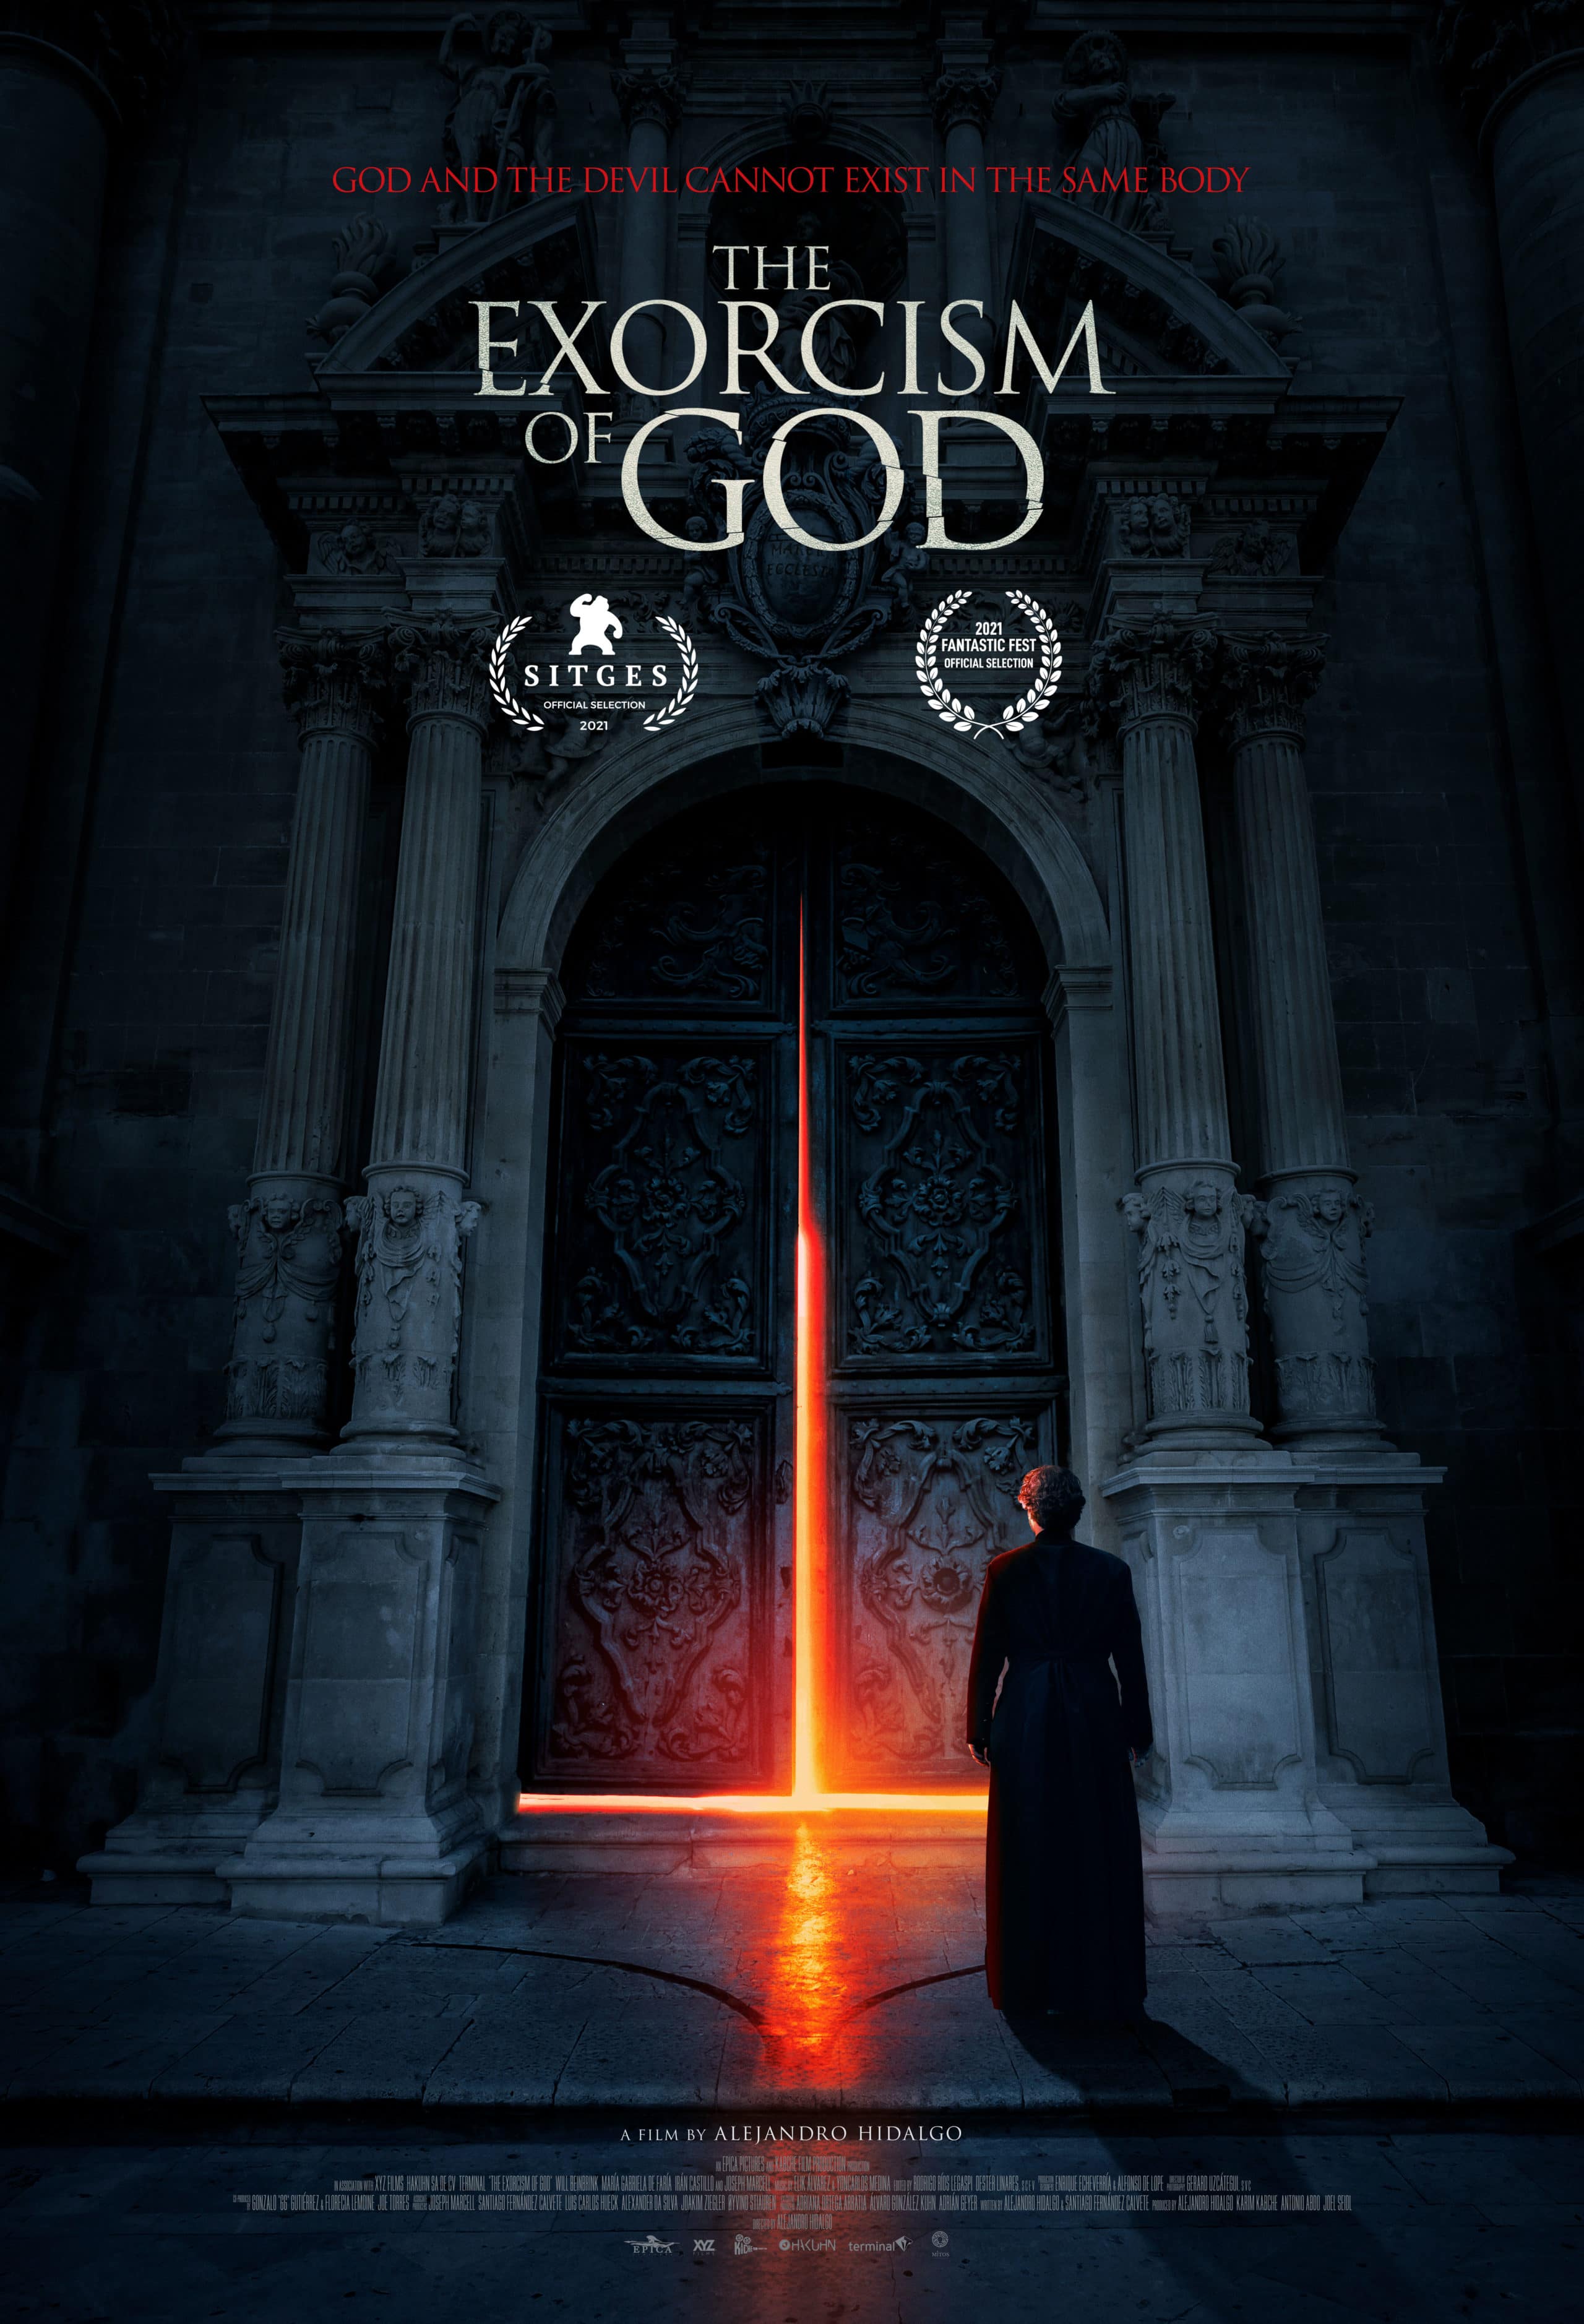 The Exorcism of God - Teaser Poster